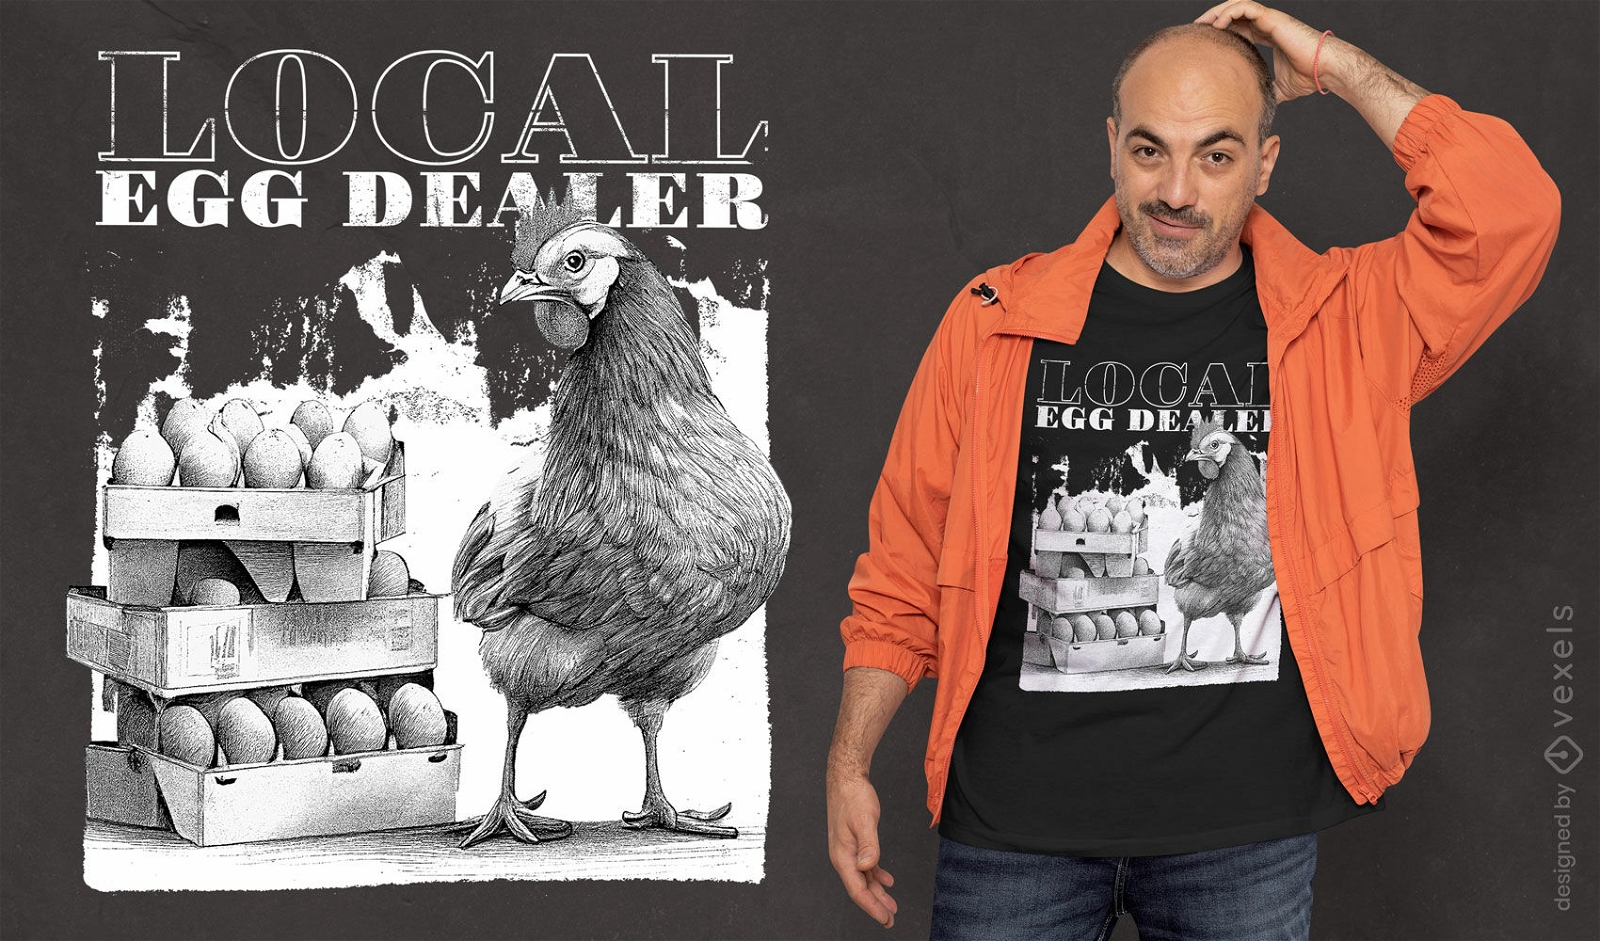 Funny local egg dealer t-shirt design